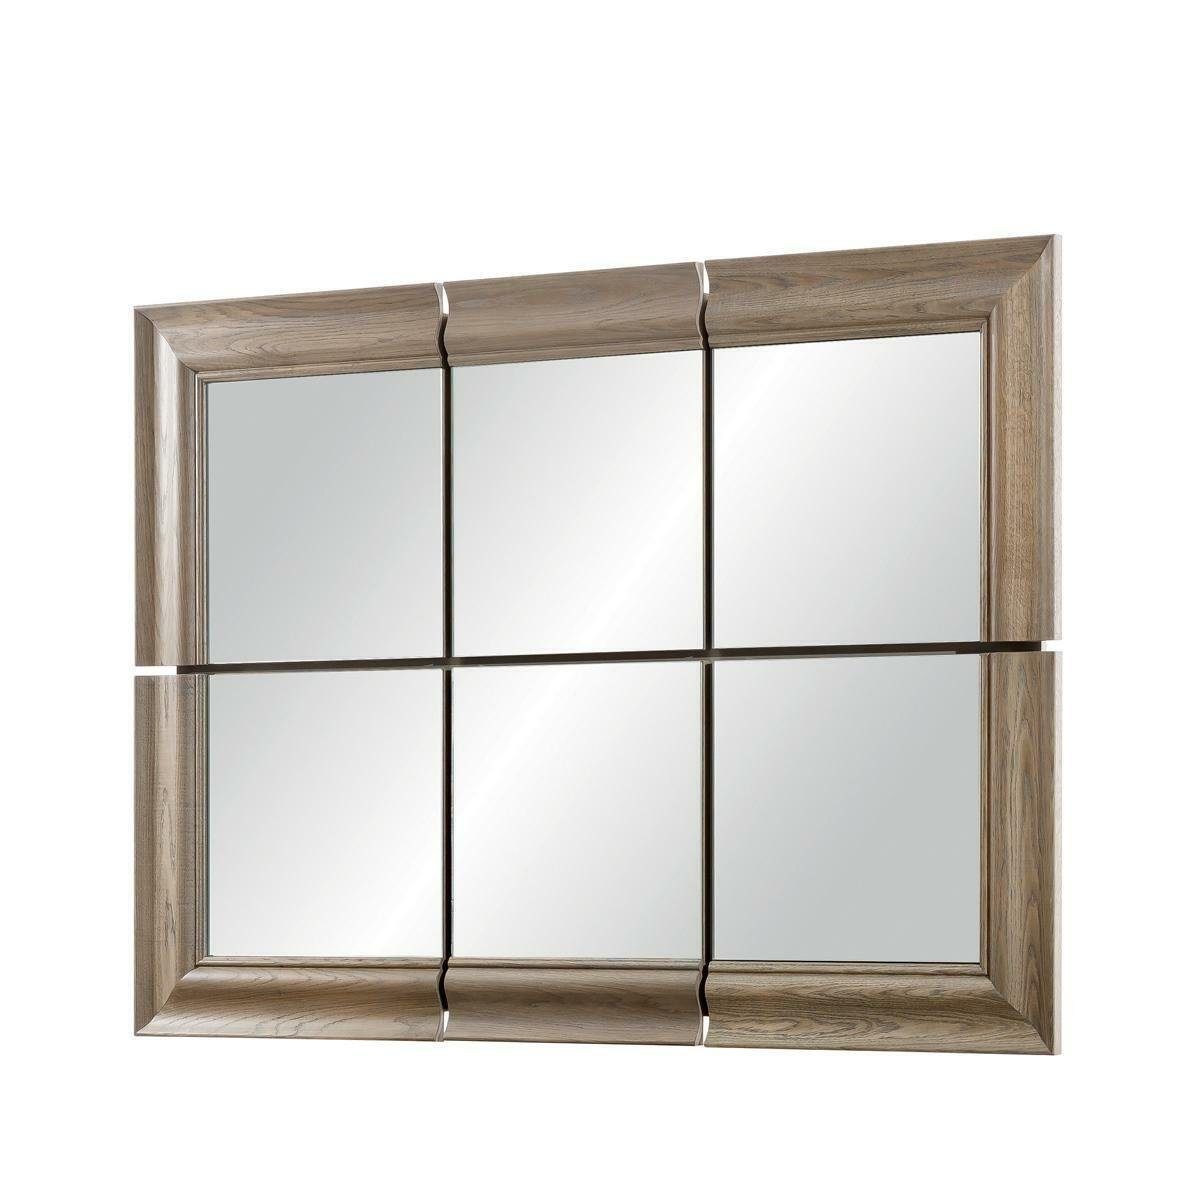 JVmoebel Wandspiegel Moderner Großer Hängespiegel Echt Holz Spiegel Rahmen Wandspiegel